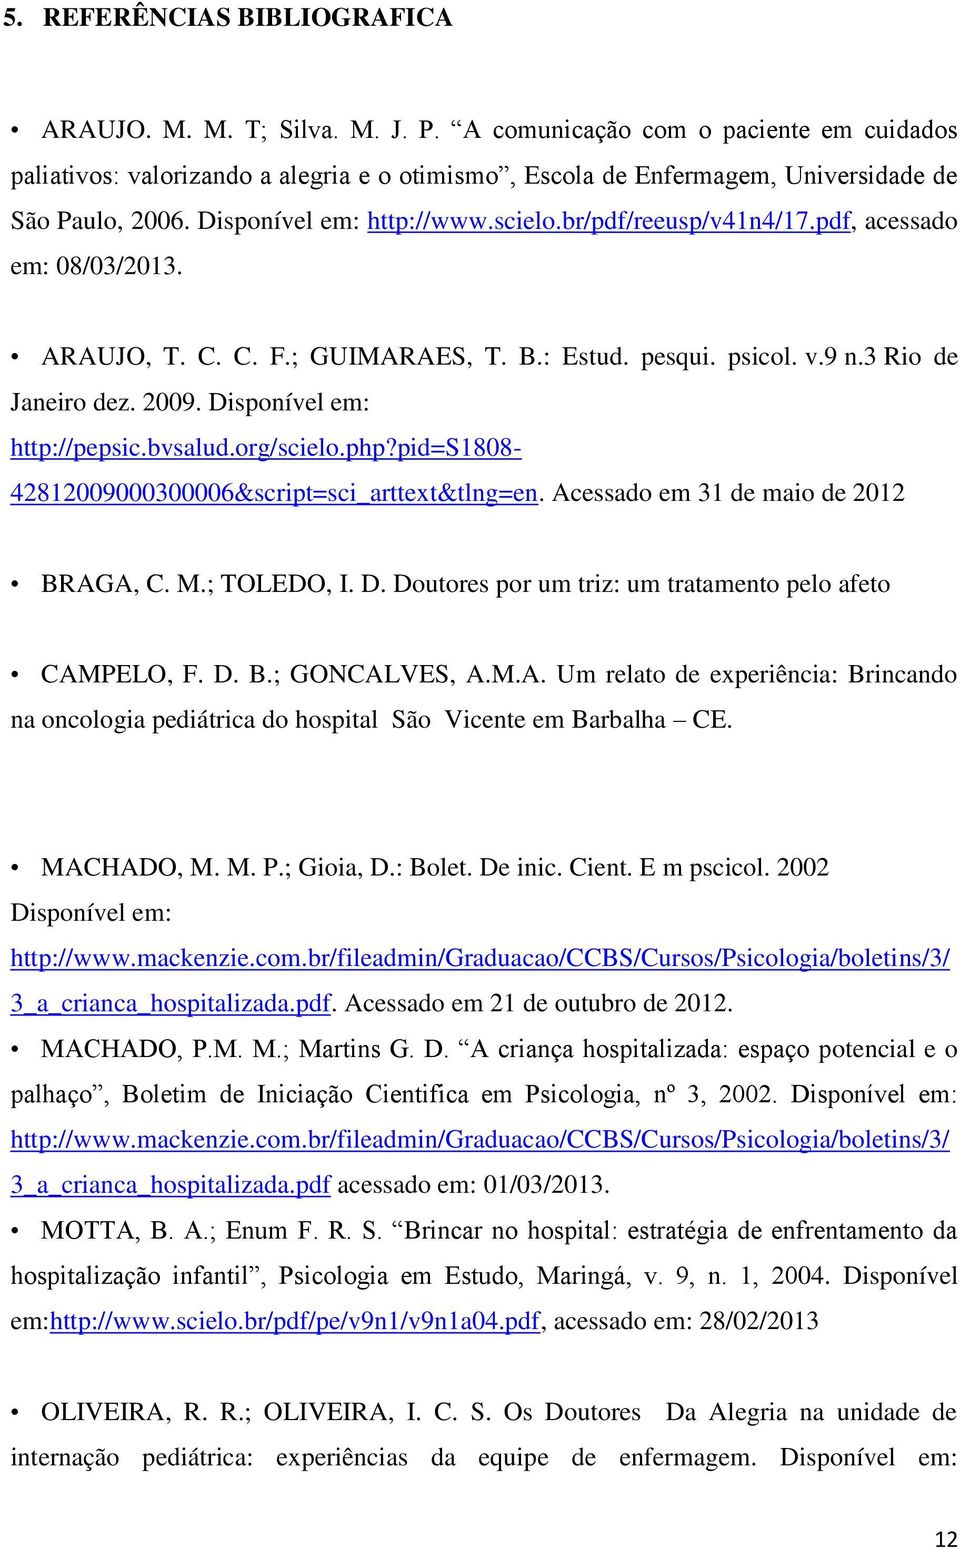 pdf, acessado em: 08/03/2013. ARAUJO, T. C. C. F.; GUIMARAES, T. B.: Estud. pesqui. psicol. v.9 n.3 Rio de Janeiro dez. 2009. Disponível em: http://pepsic.bvsalud.org/scielo.php?